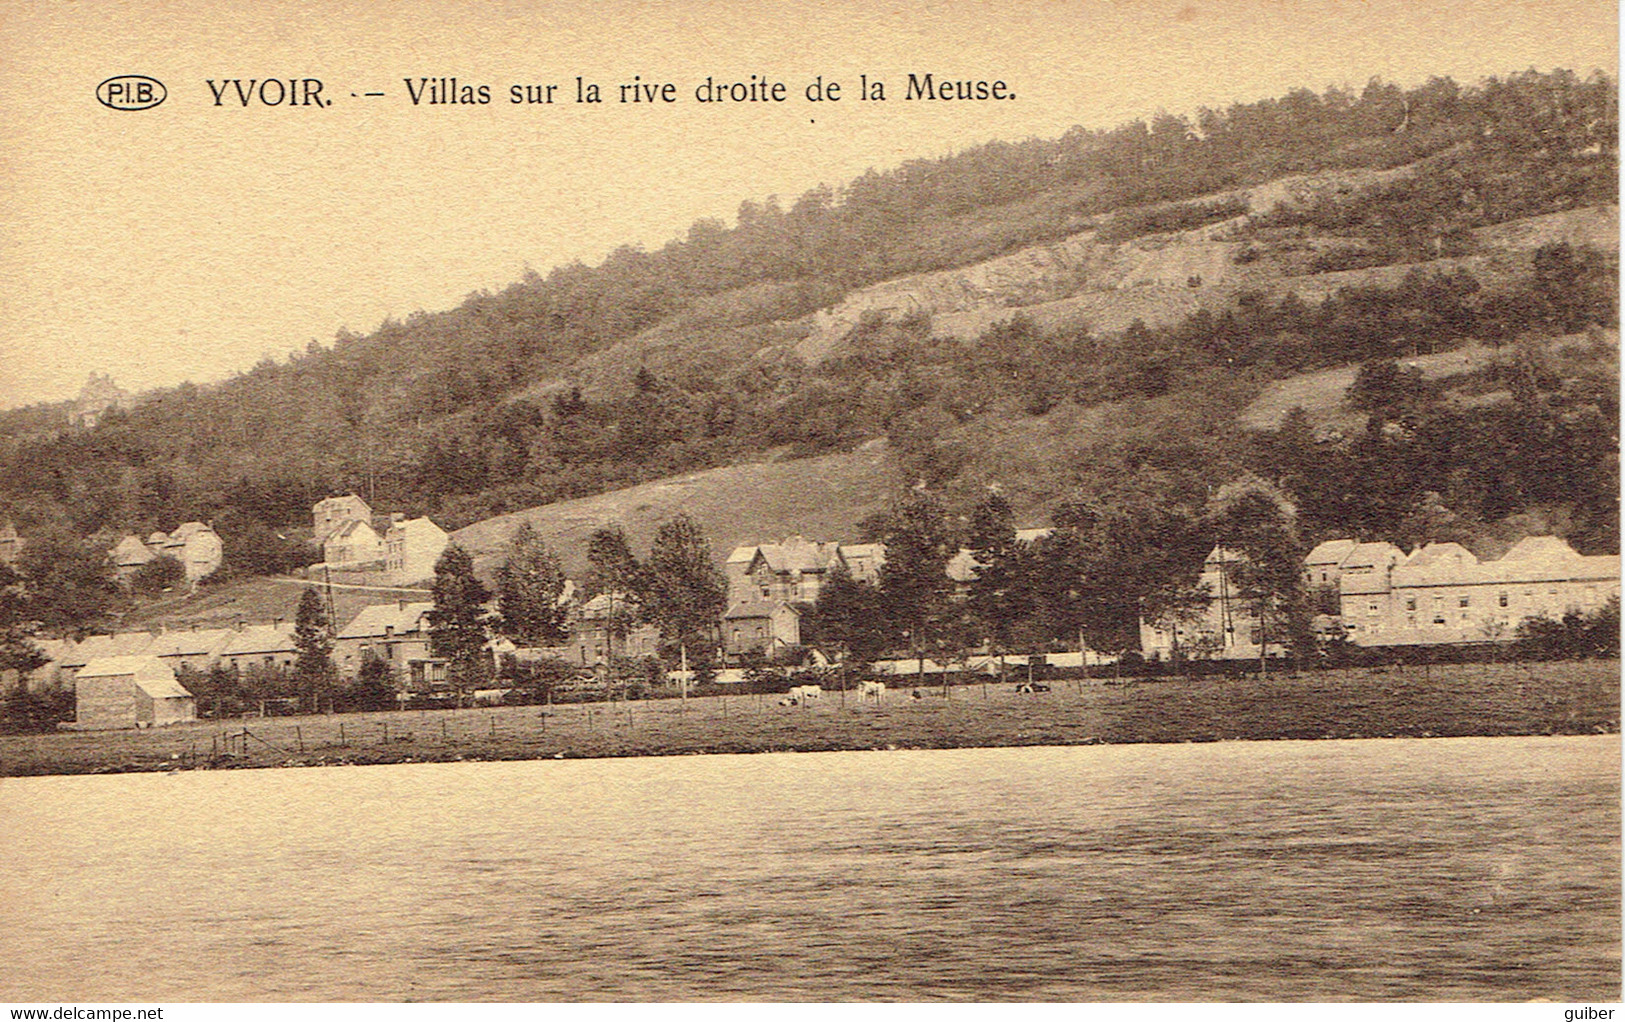 Yvoir Villas  Sur La Rive Droite De La Meuse   P.I.B. Delers Piette - Yvoir